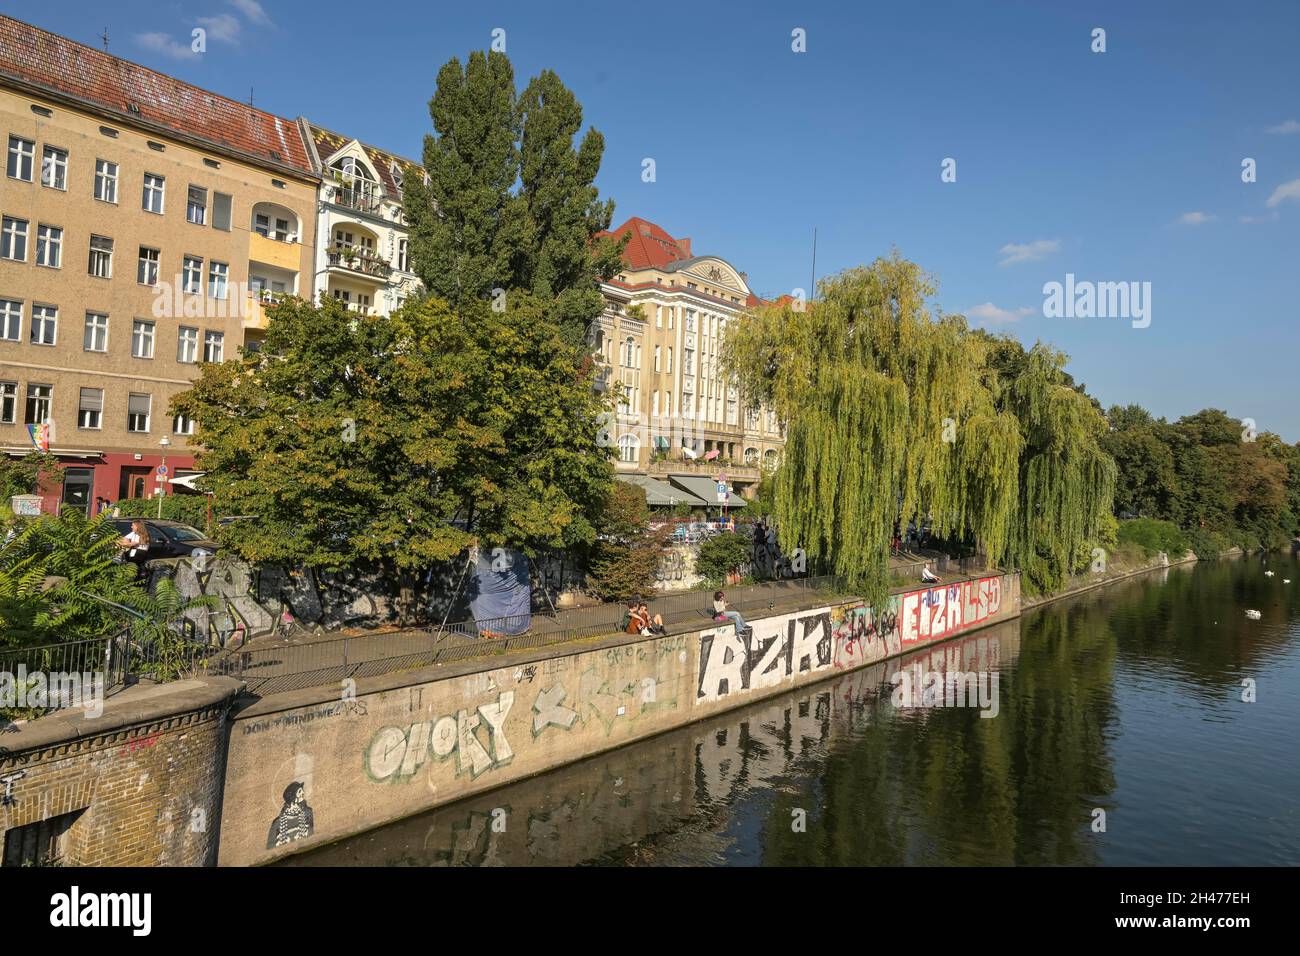 Altbauten, Paul-Lincke-Ufer, Landwehrkanal, Kreuzberg, Berlin, Deutschland Stock Photo